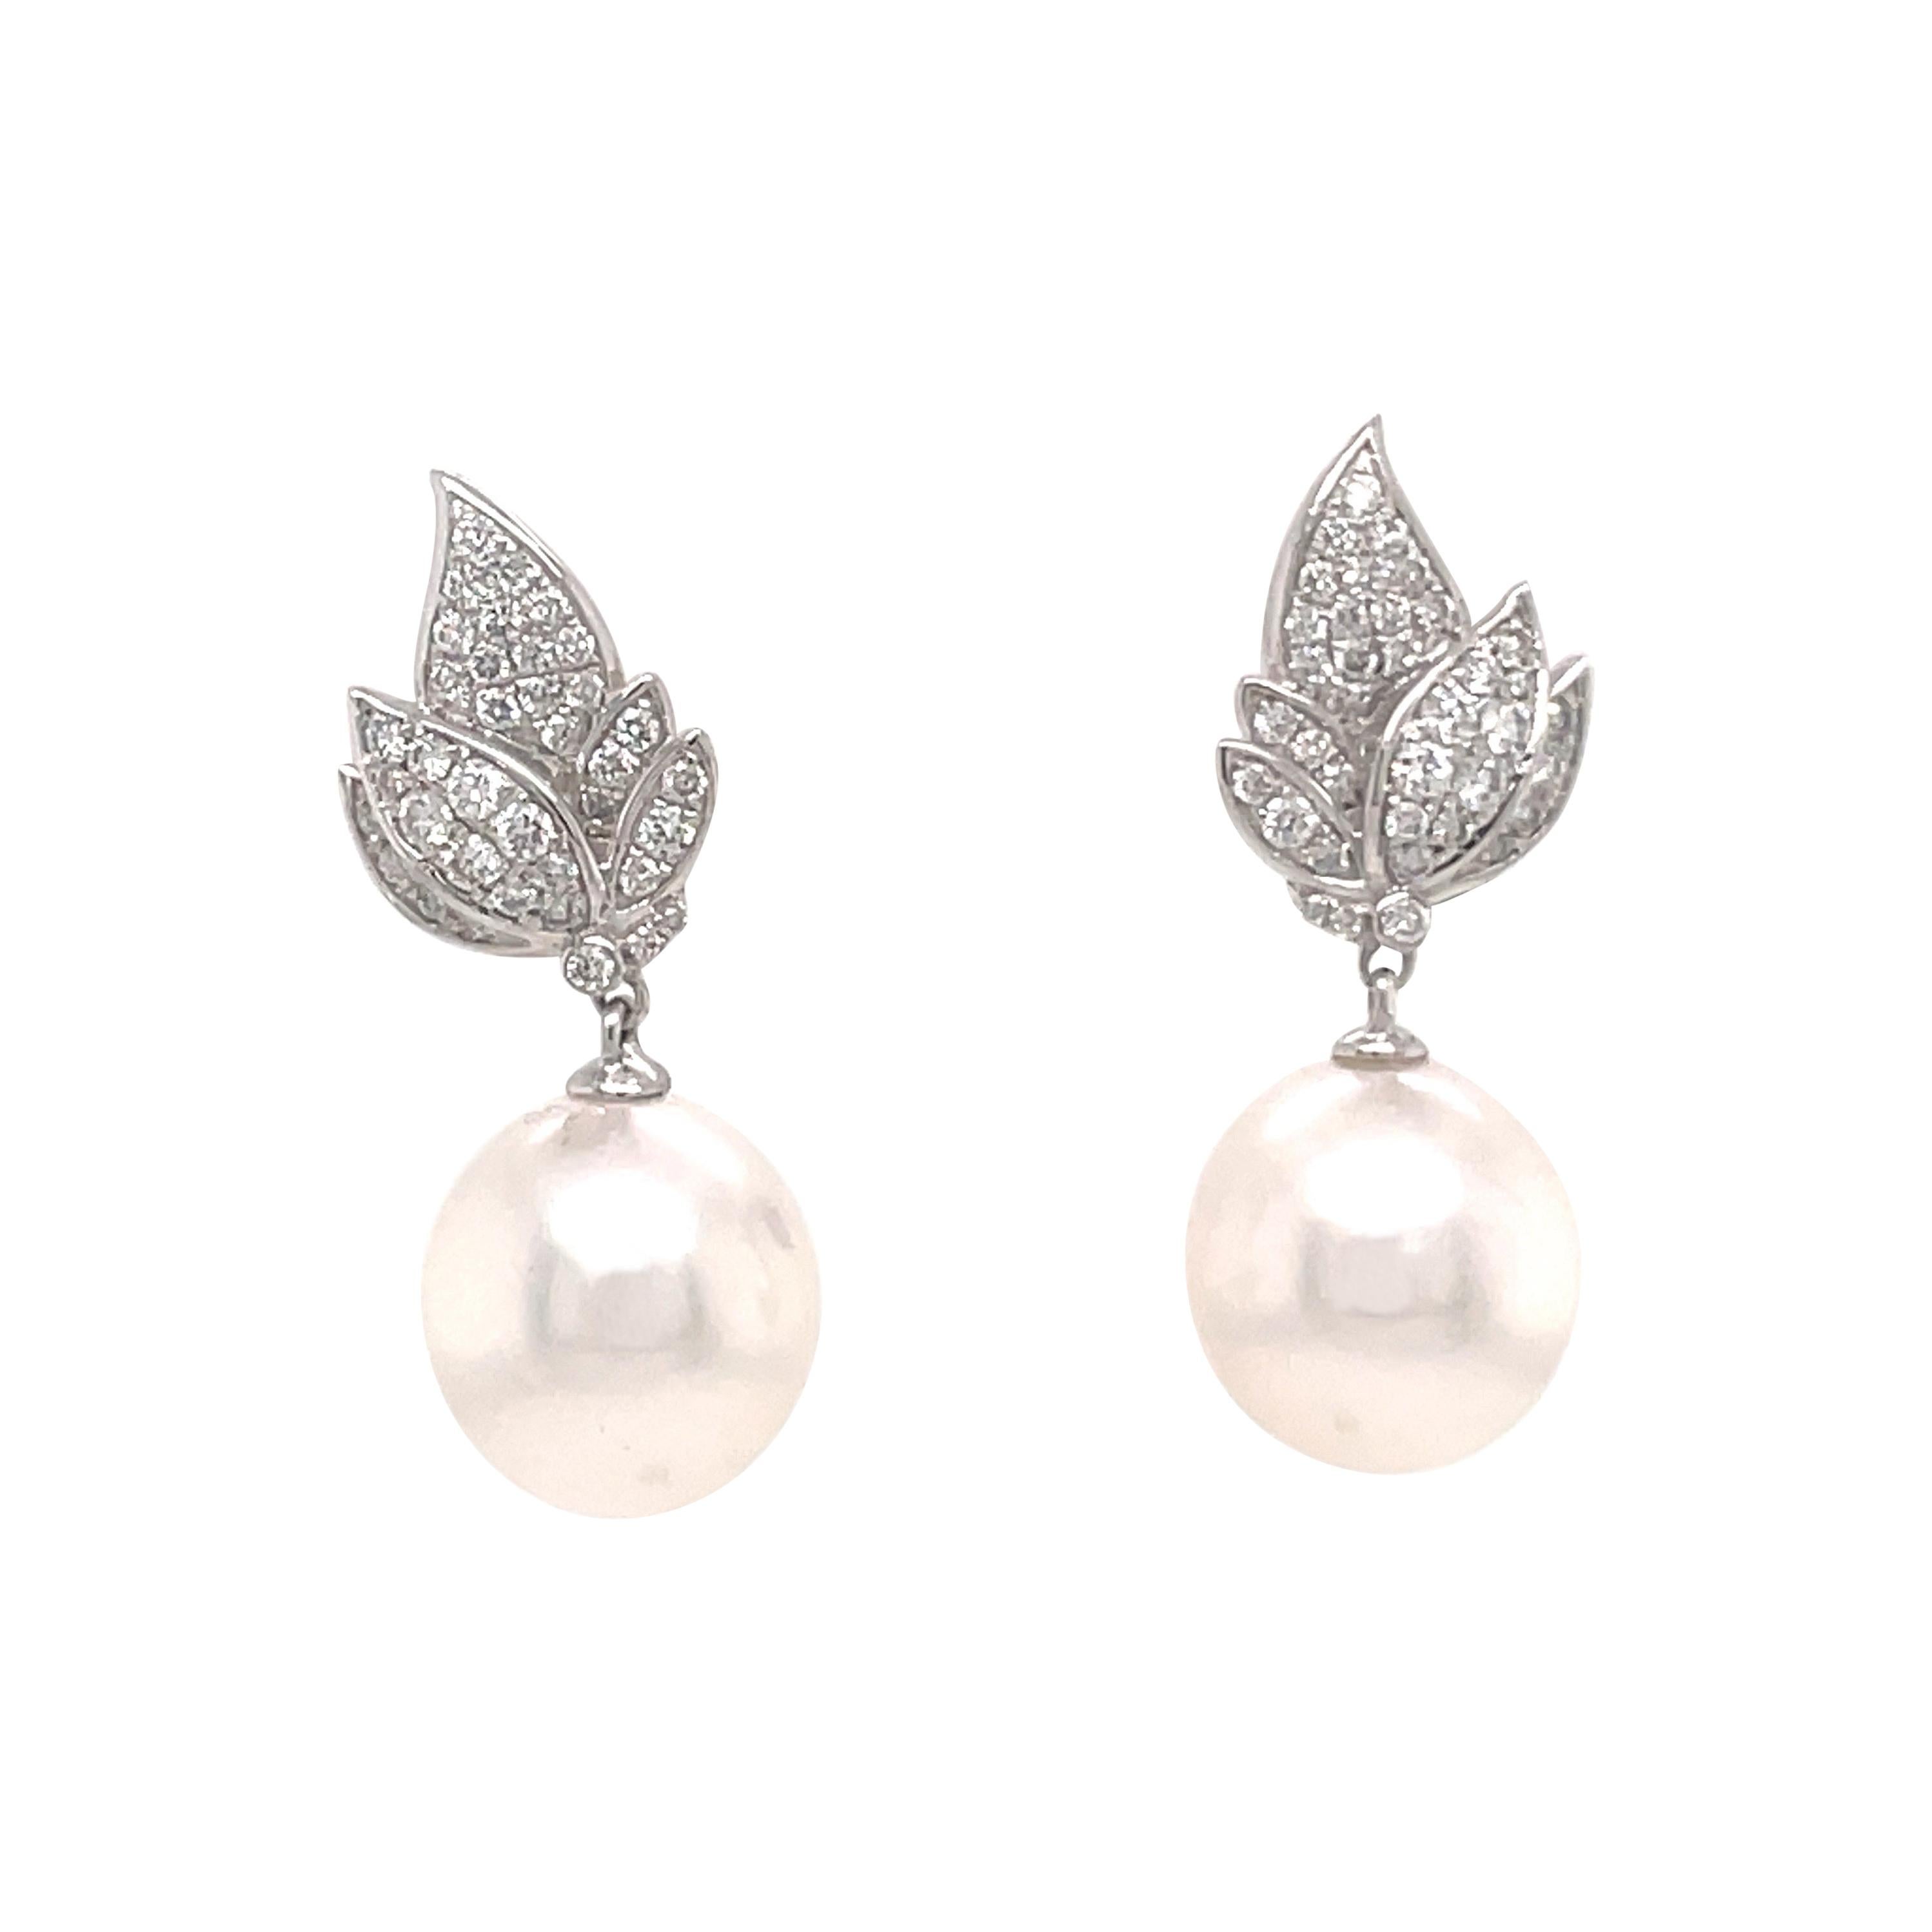 Ohrringe mit 18 Karat Blattdiamanten und Perlen, baumeln